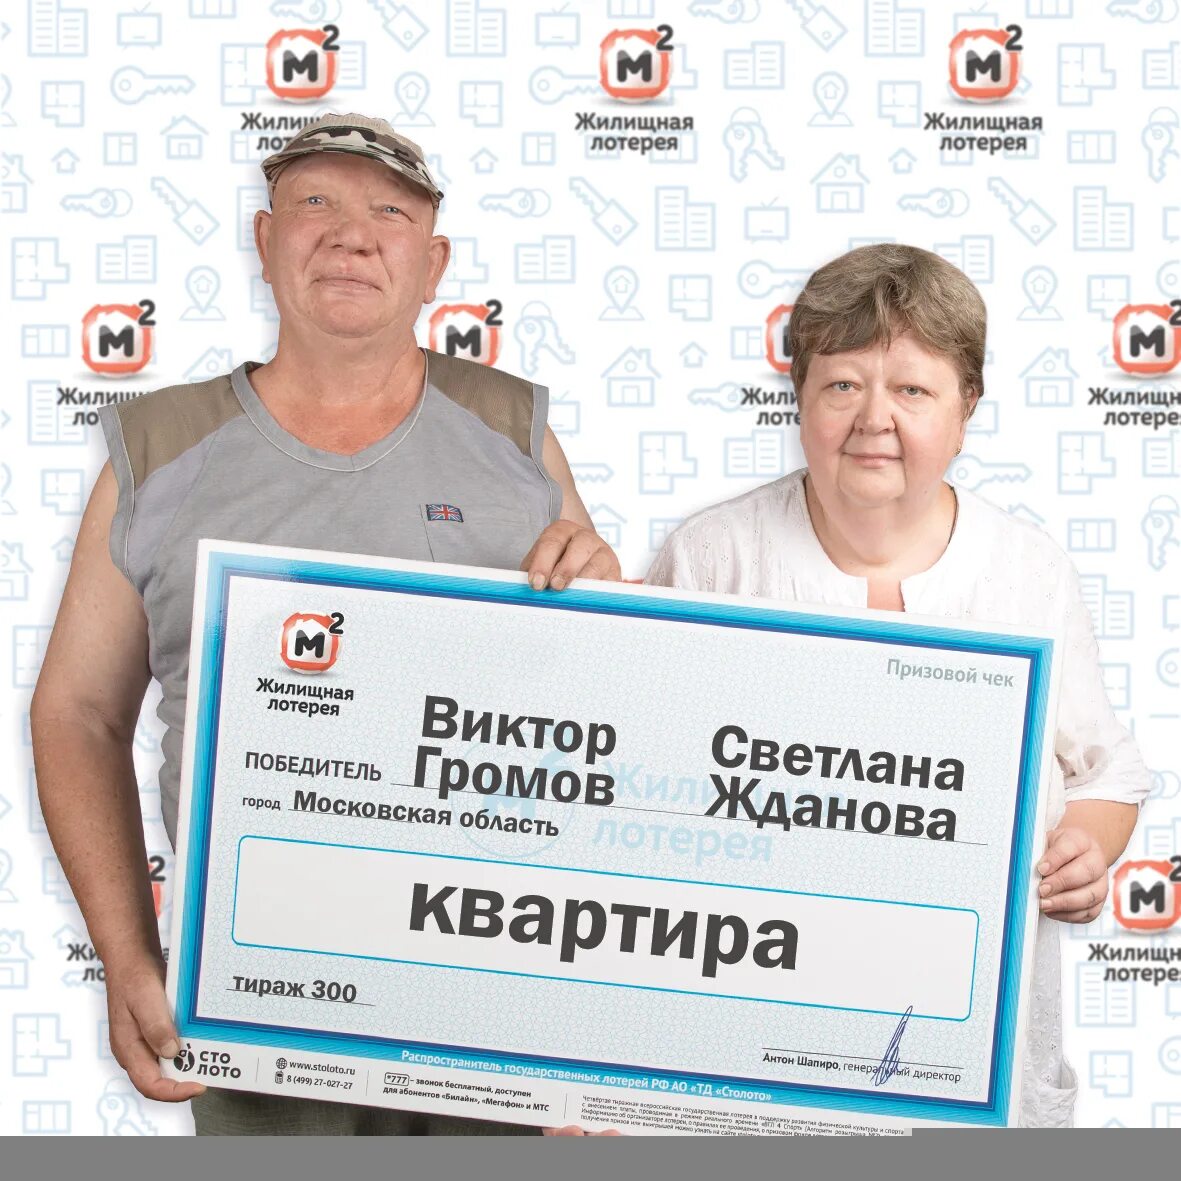 Национальная лотерея россии отзывы реальных. Победитель лотереи. Выигрышный лотерейный билет. Самый крупный выигрыш в лотерею. Выигрыш в лотерею билет.